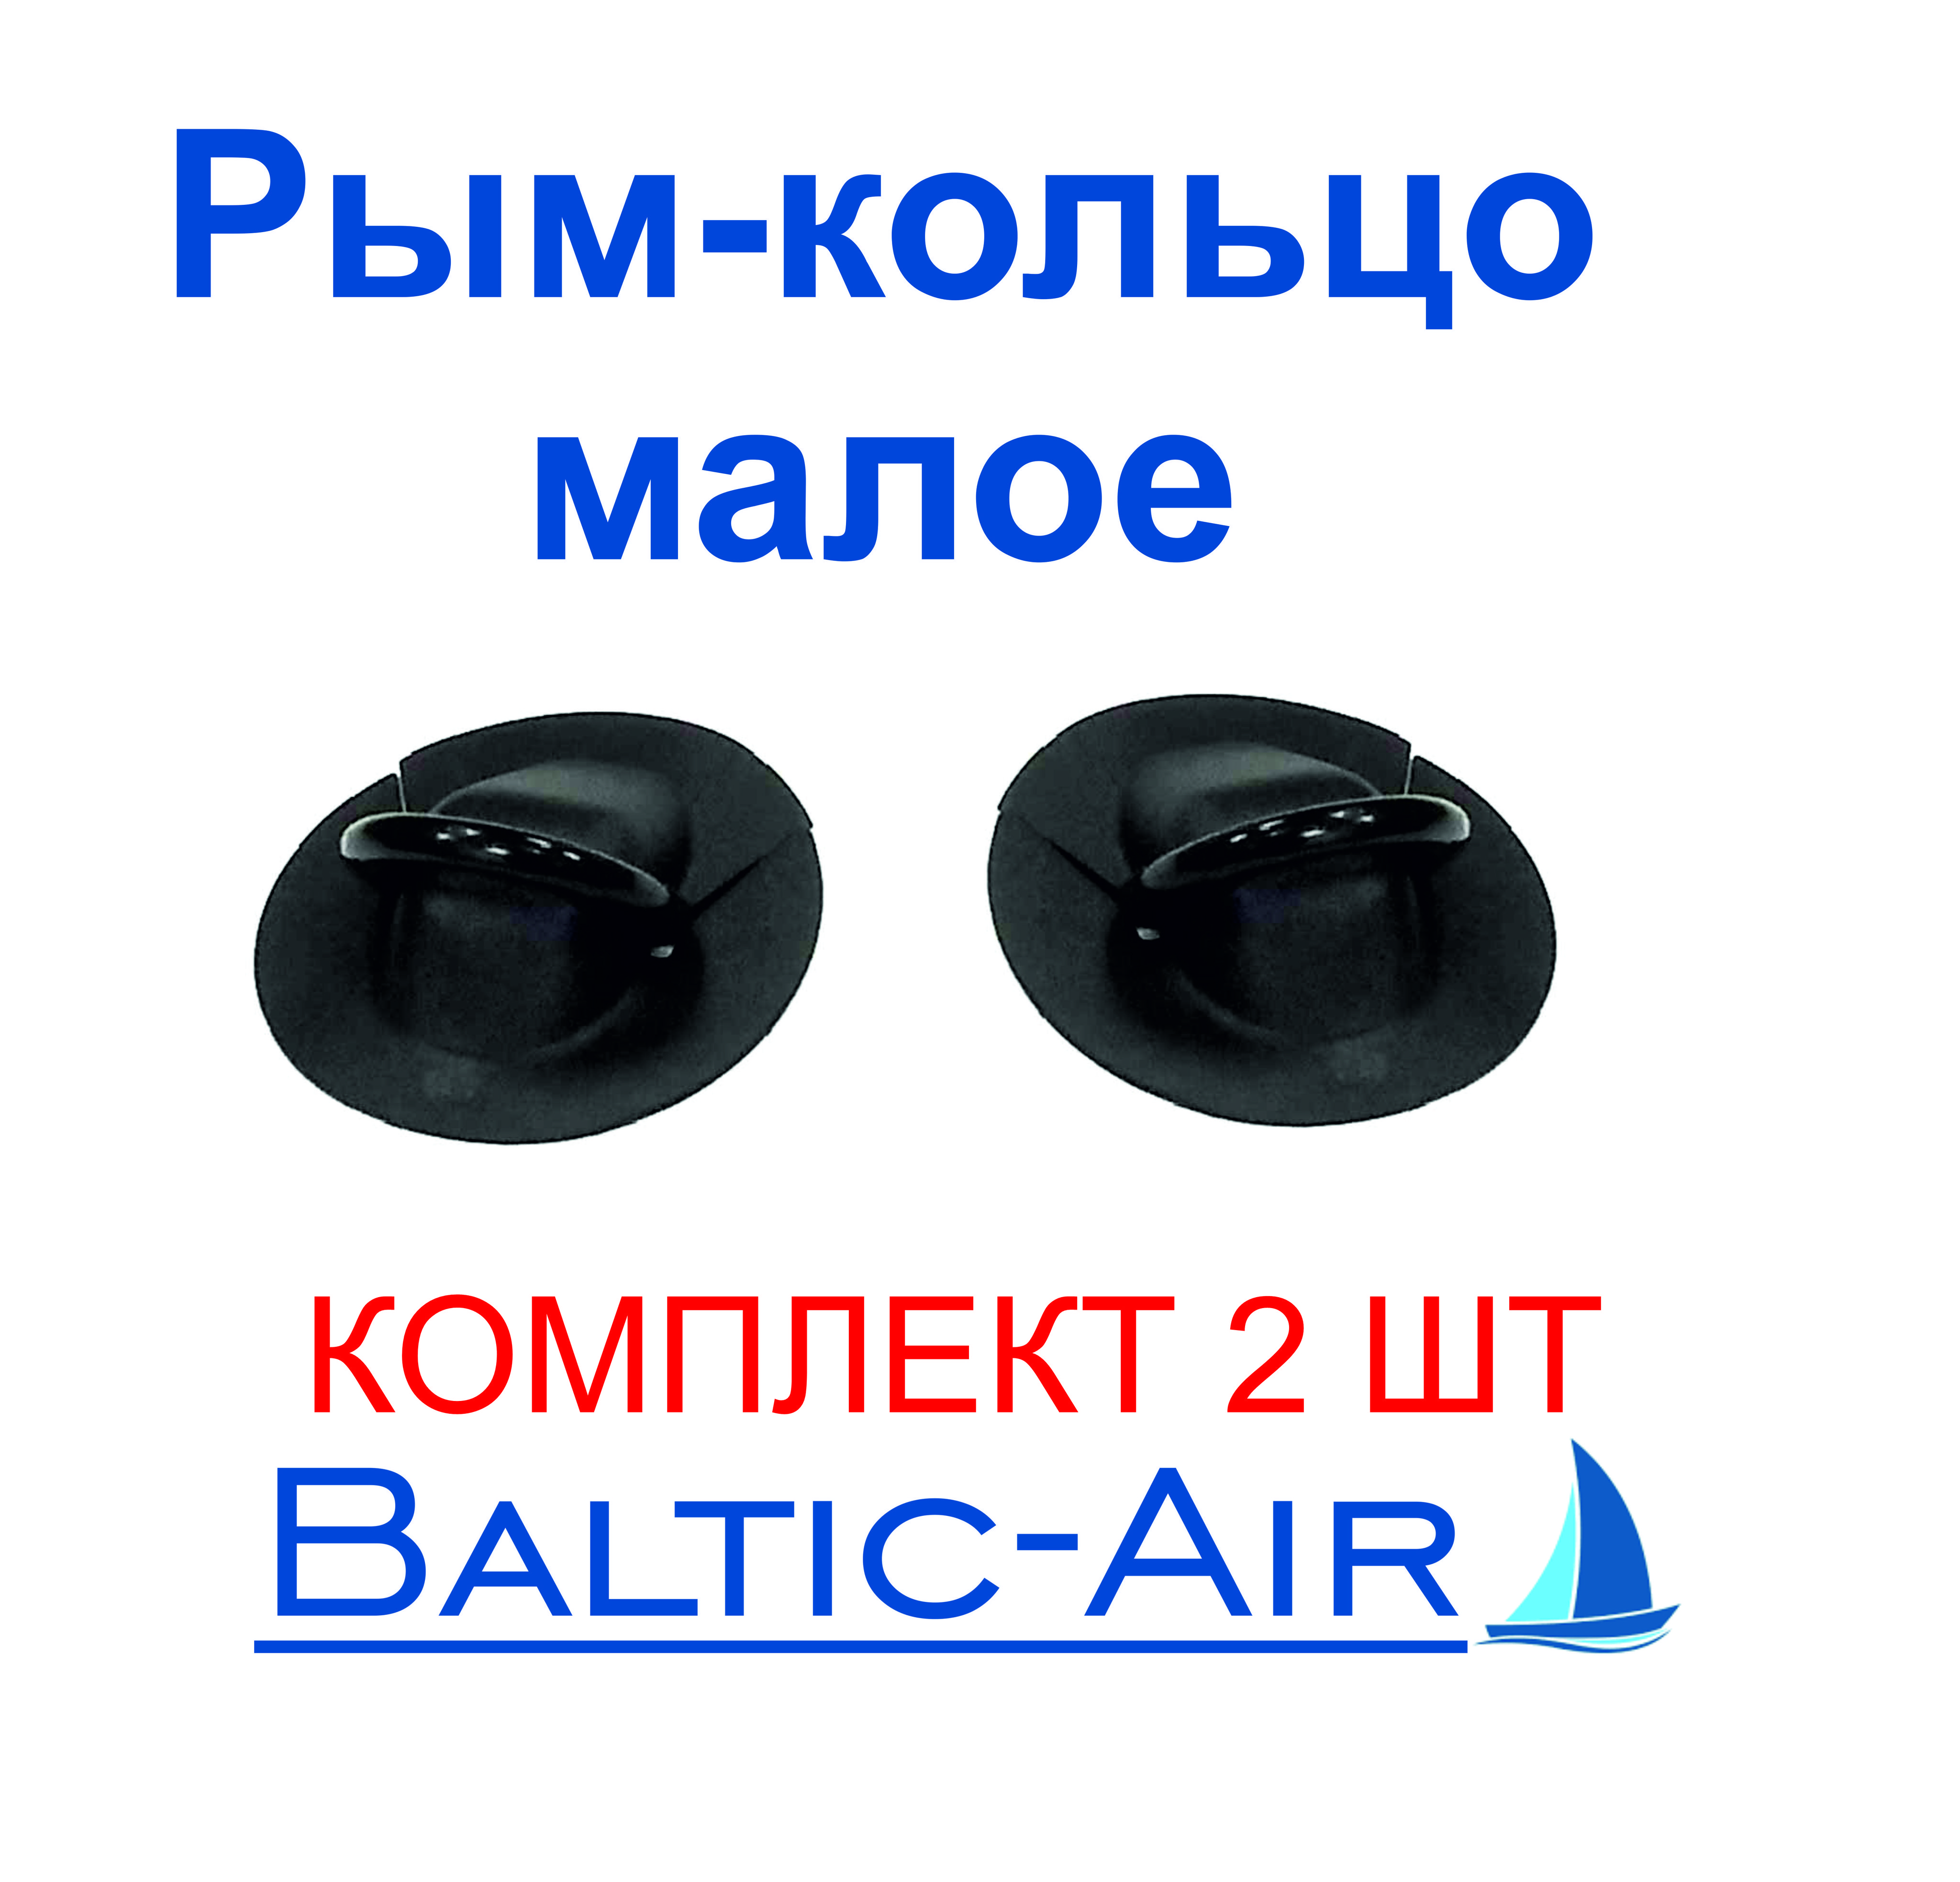 BalticAirПрочиеаксессуарыикомплектующиедлясудов